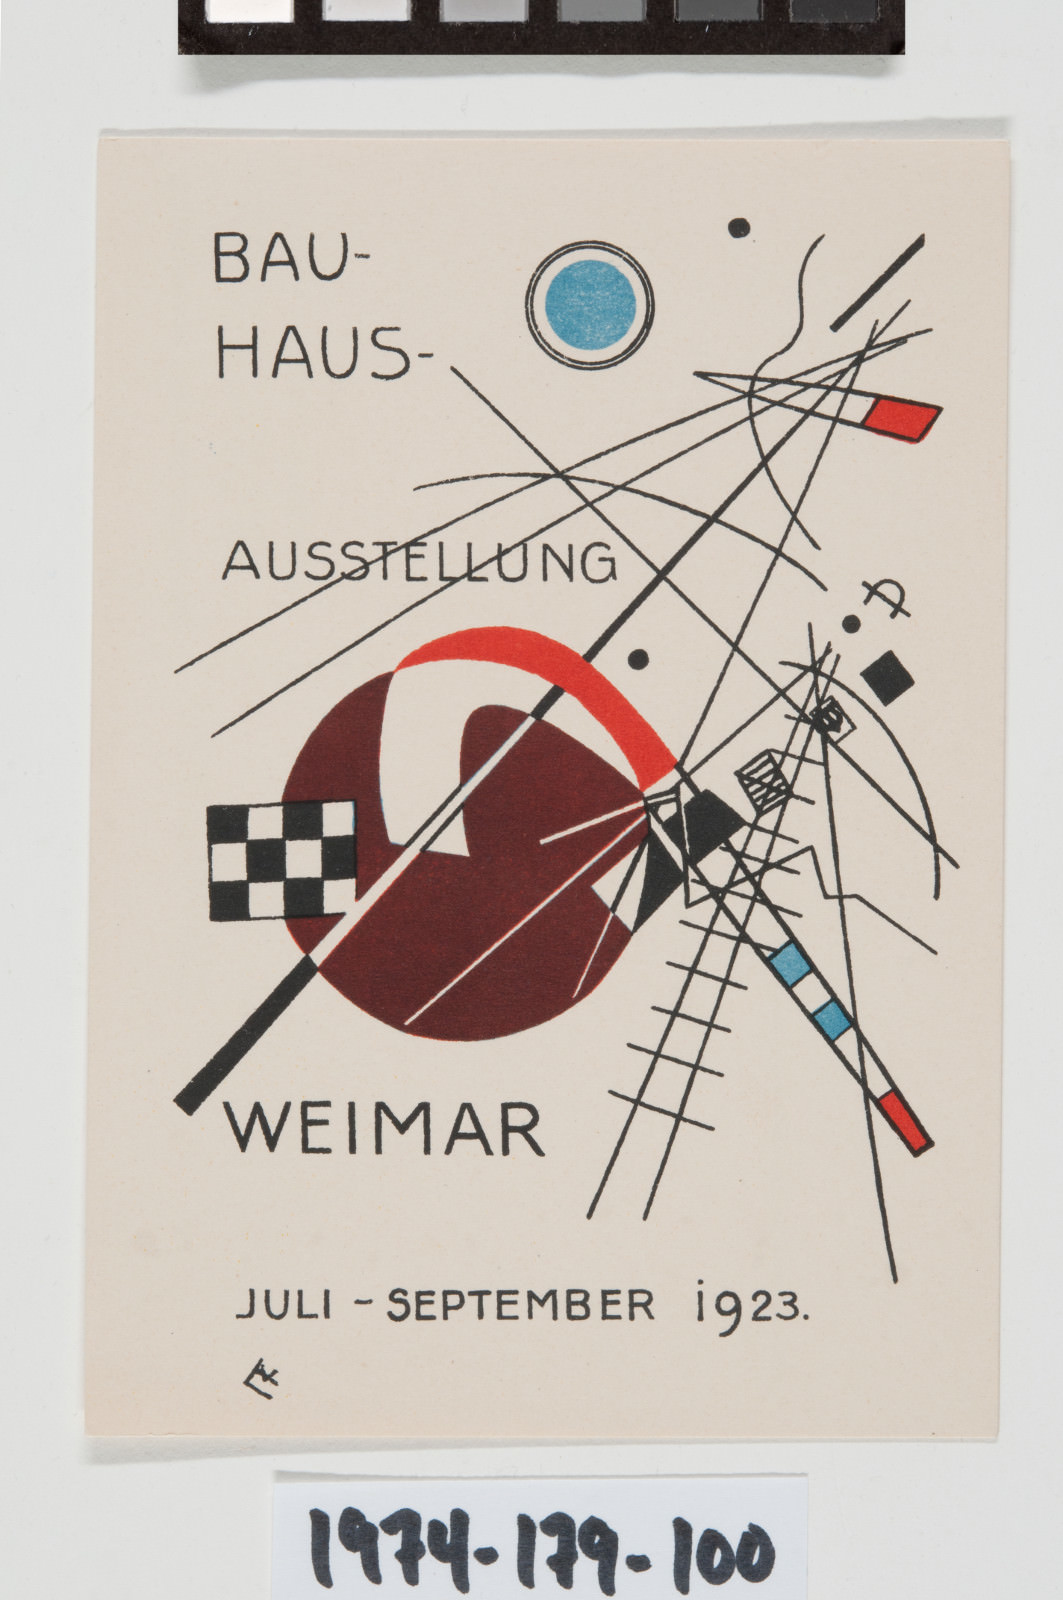 Fig. 6 – Vasily Kandinsky, Cartão Postal número 3, para Exposição da Bauhaus, Weimar, Julho-Setembro 1923, Litografia Colorida, Imagem: 5 3/8 x 3 3/4 polegadas (13.7 x 9.5 cm) Folha: 5 15/16 x 4 1/4 polegadas (15.1 x 10.8 cm). Philadelphia Museum of Art, Presente de Carl Zigrosser, 1974-179-100.